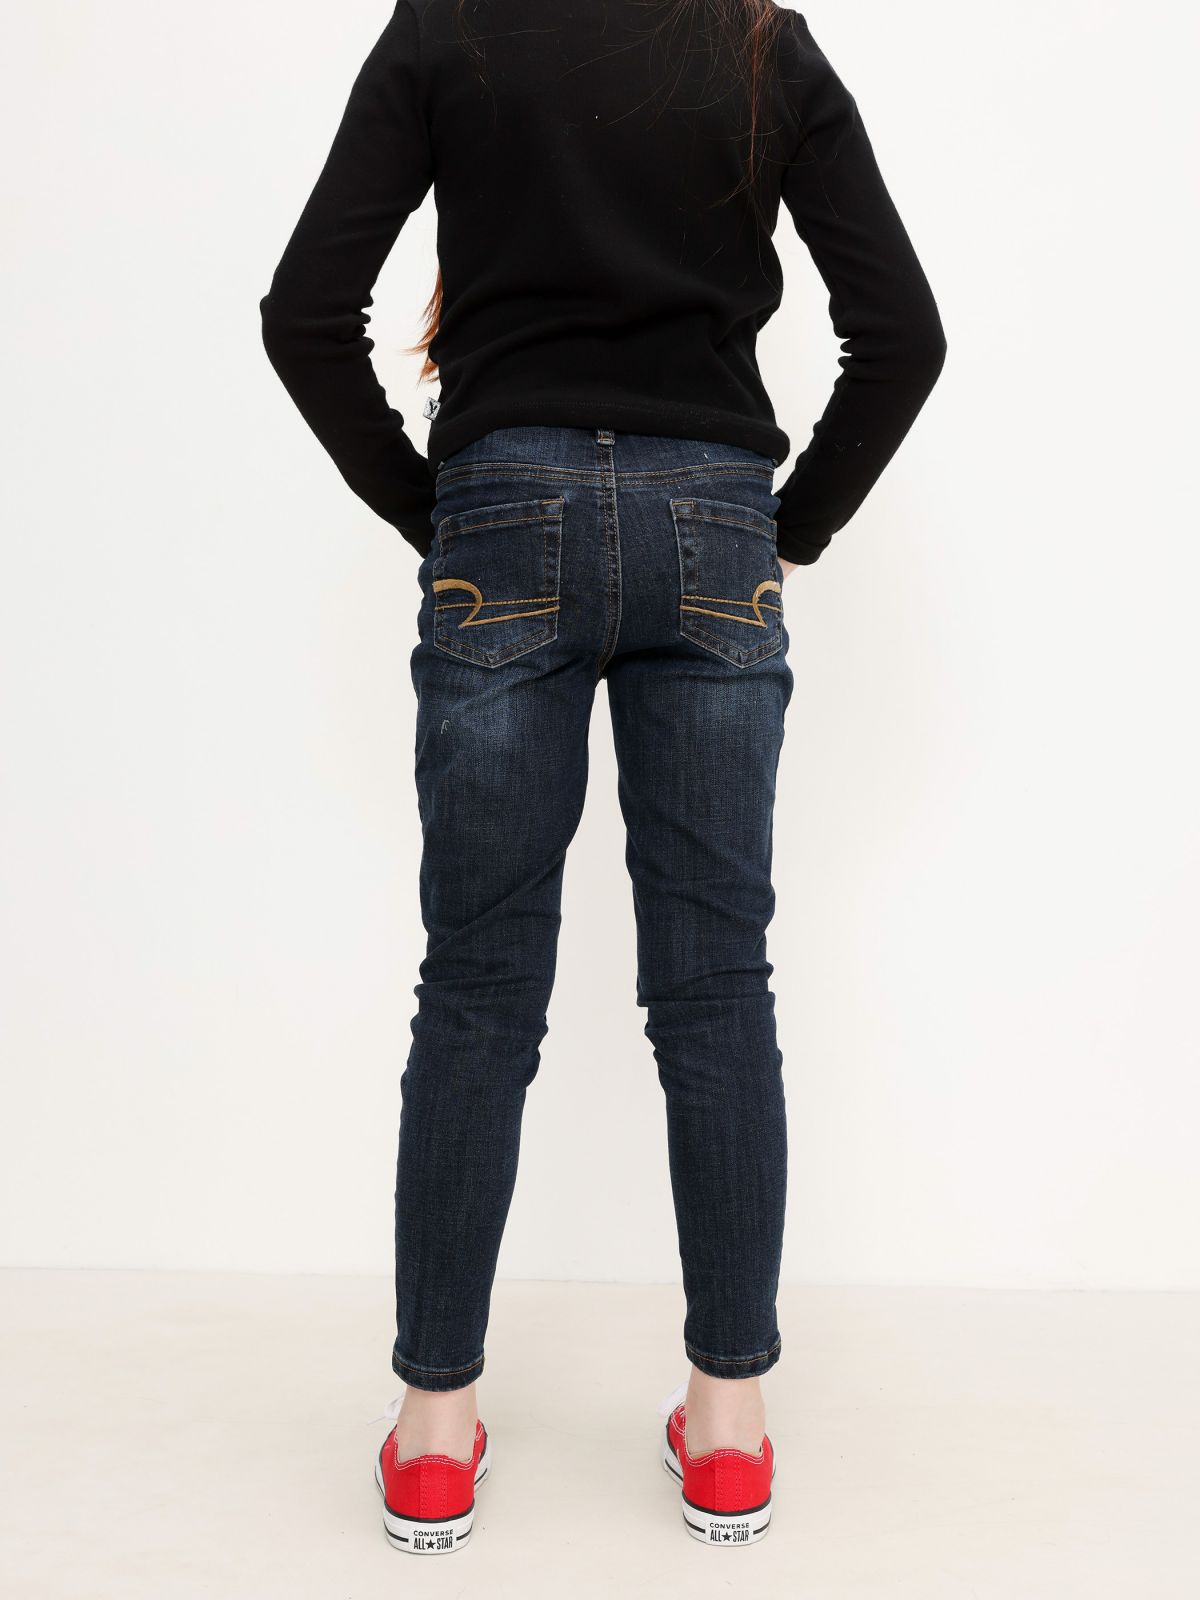  ג'ינס ארוך בשטיפה כהה / בנות של AMERICAN EAGLE